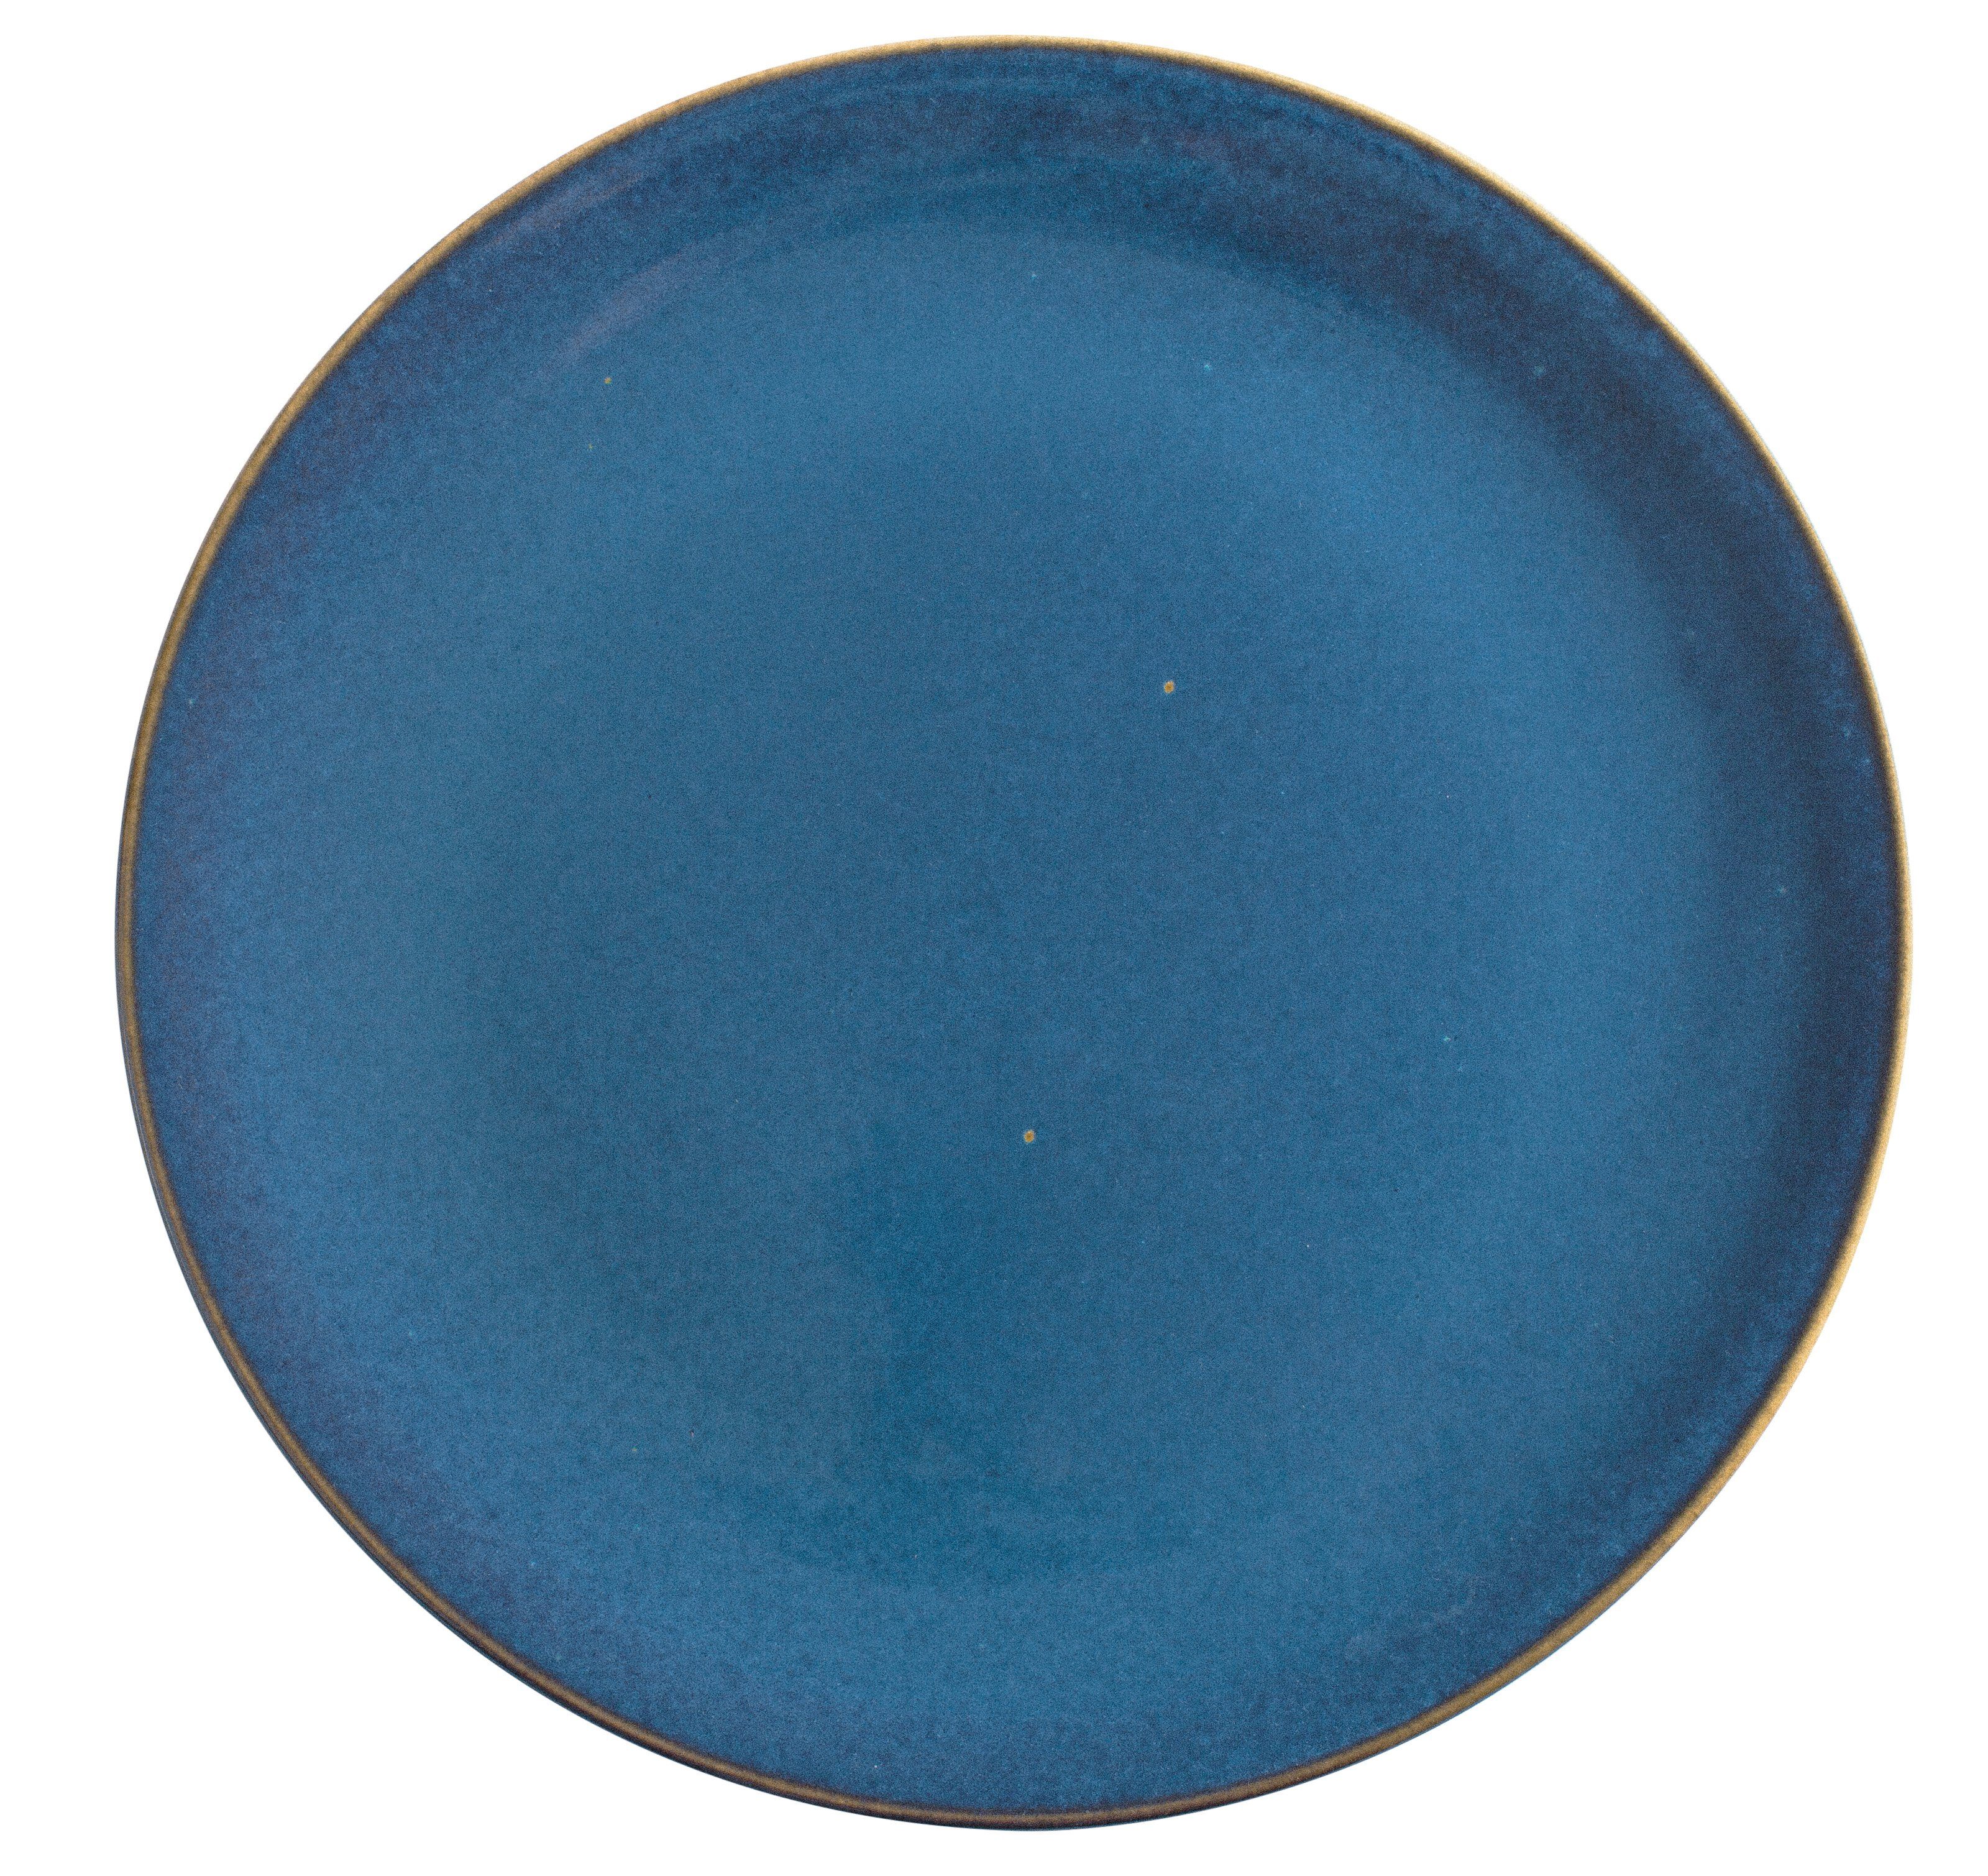 atlantic Kahla in Handglasiert, cm, 31 blue Made Germany Homestyle Pizzateller